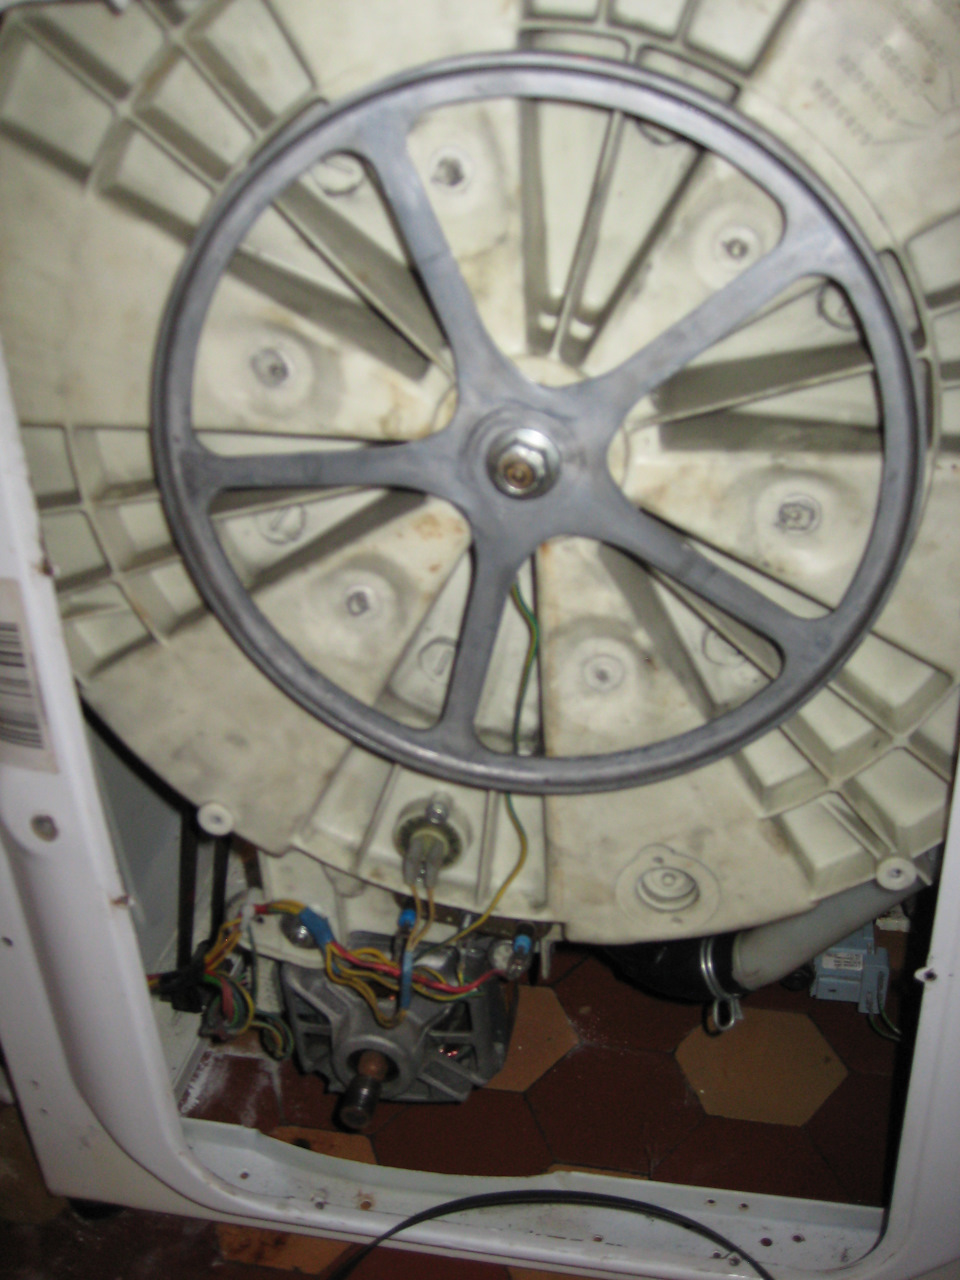 Как заказать ремонт стиральных машин на дому в Сумах